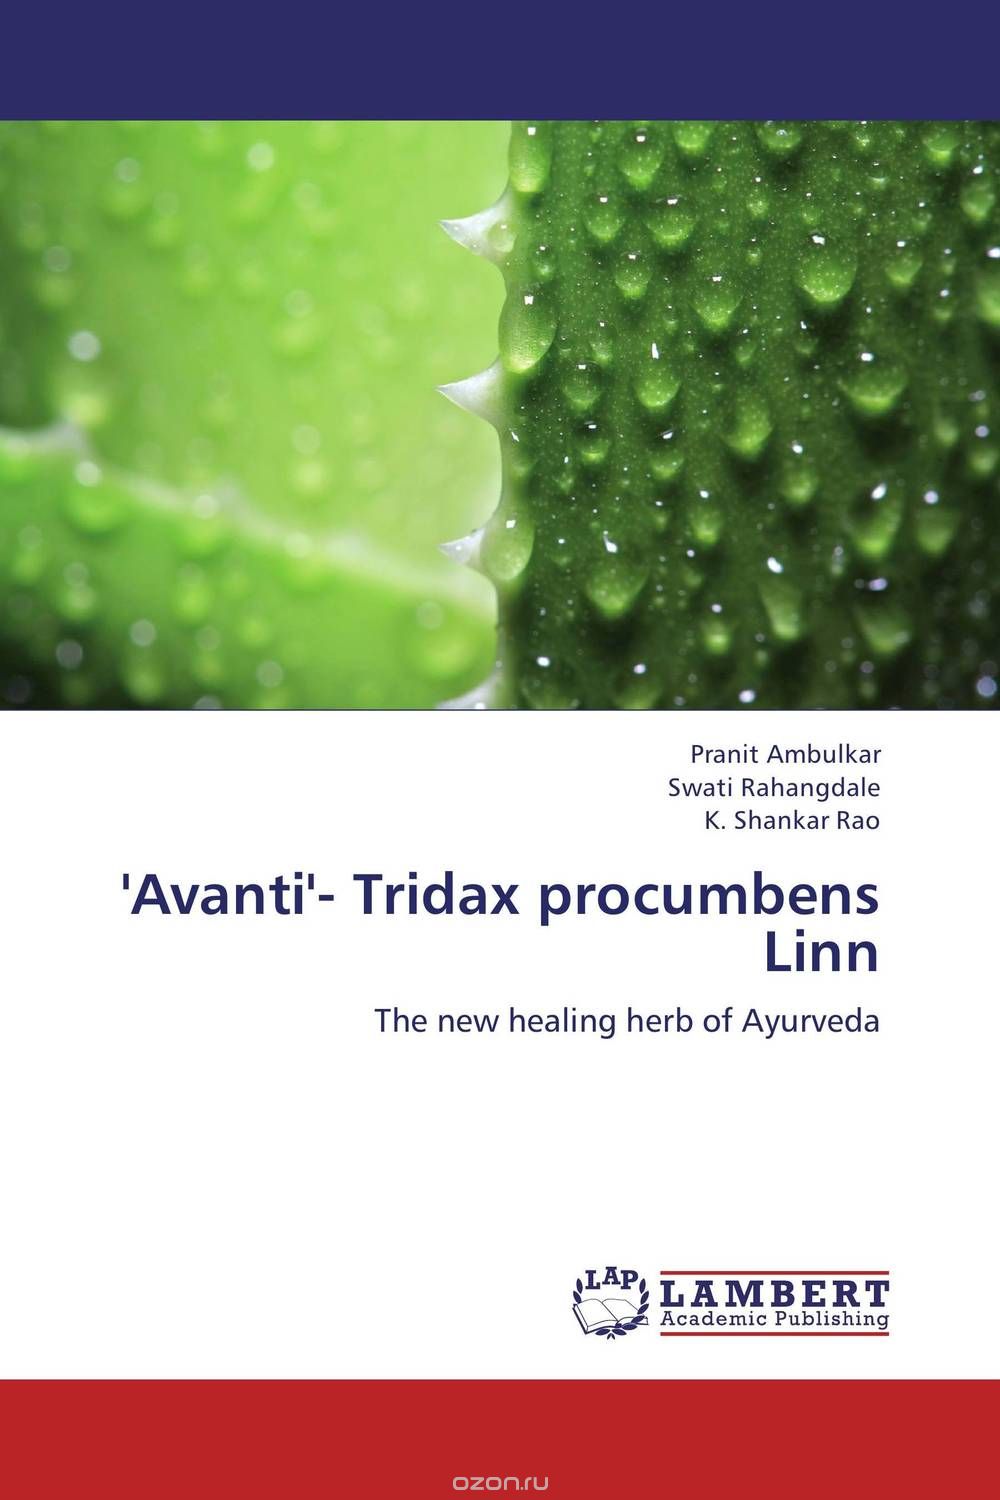 Скачать книгу "'Avanti'- Tridax procumbens Linn"